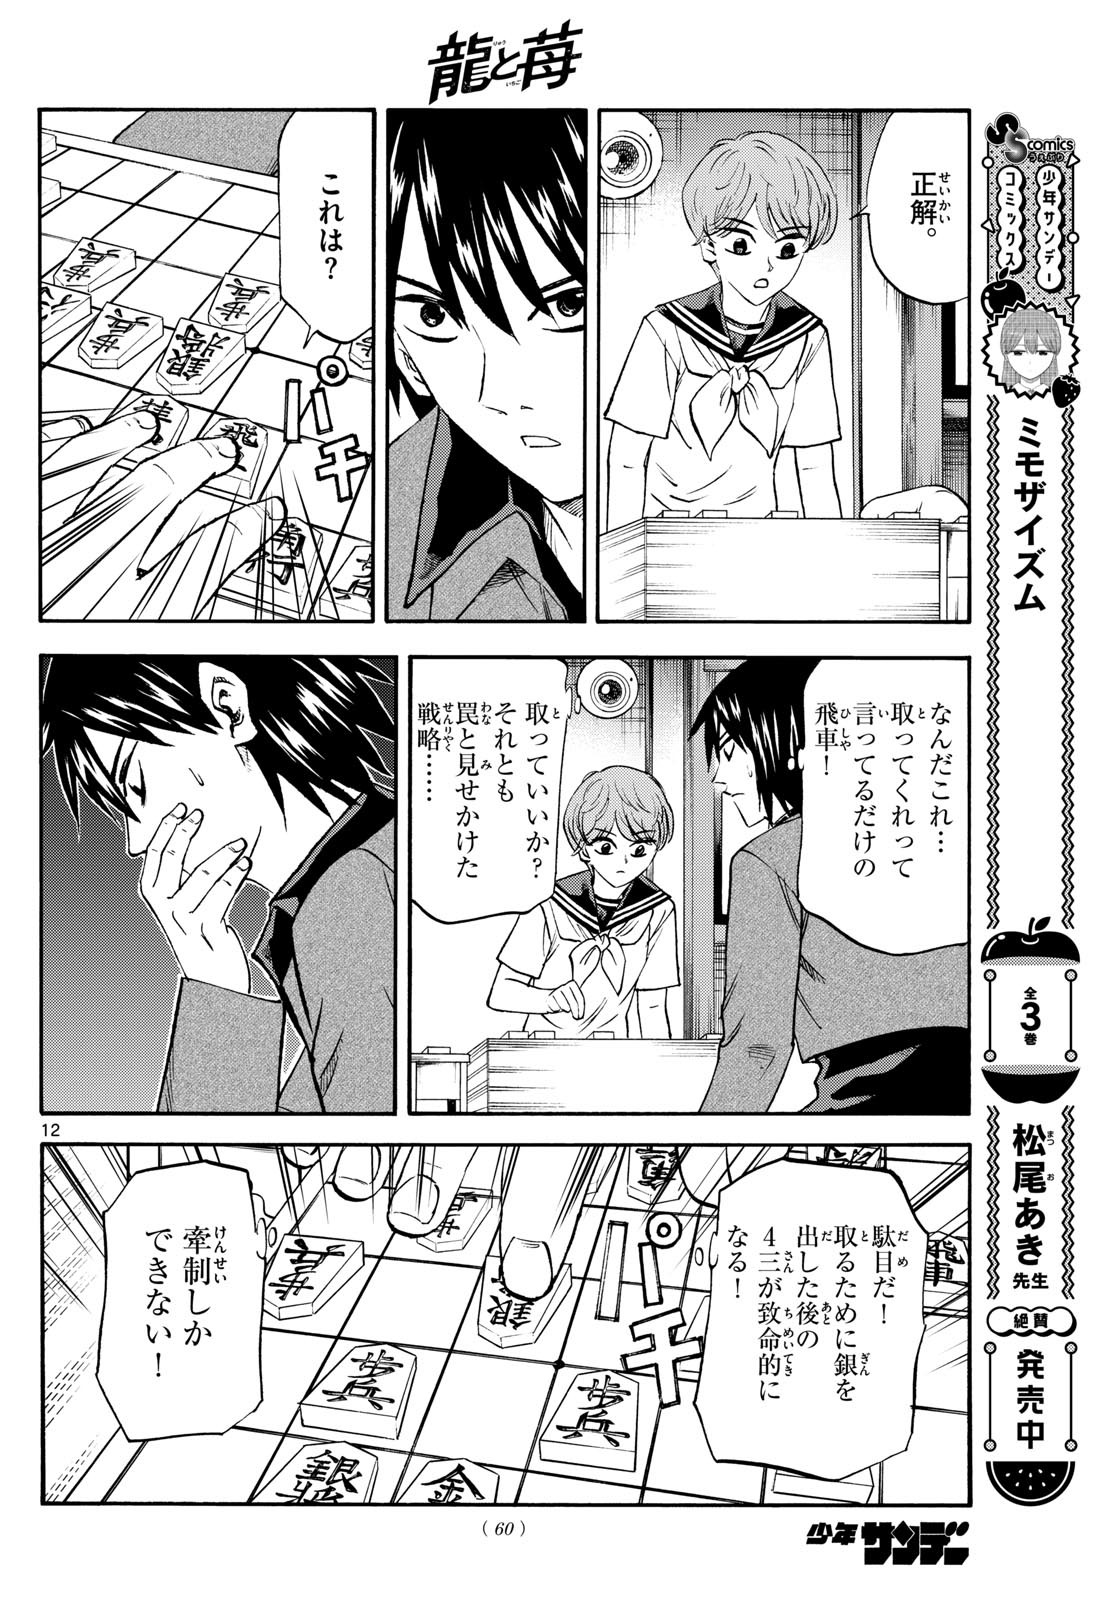 Ryu-to-Ichigo - Chapter 194 - Page 12